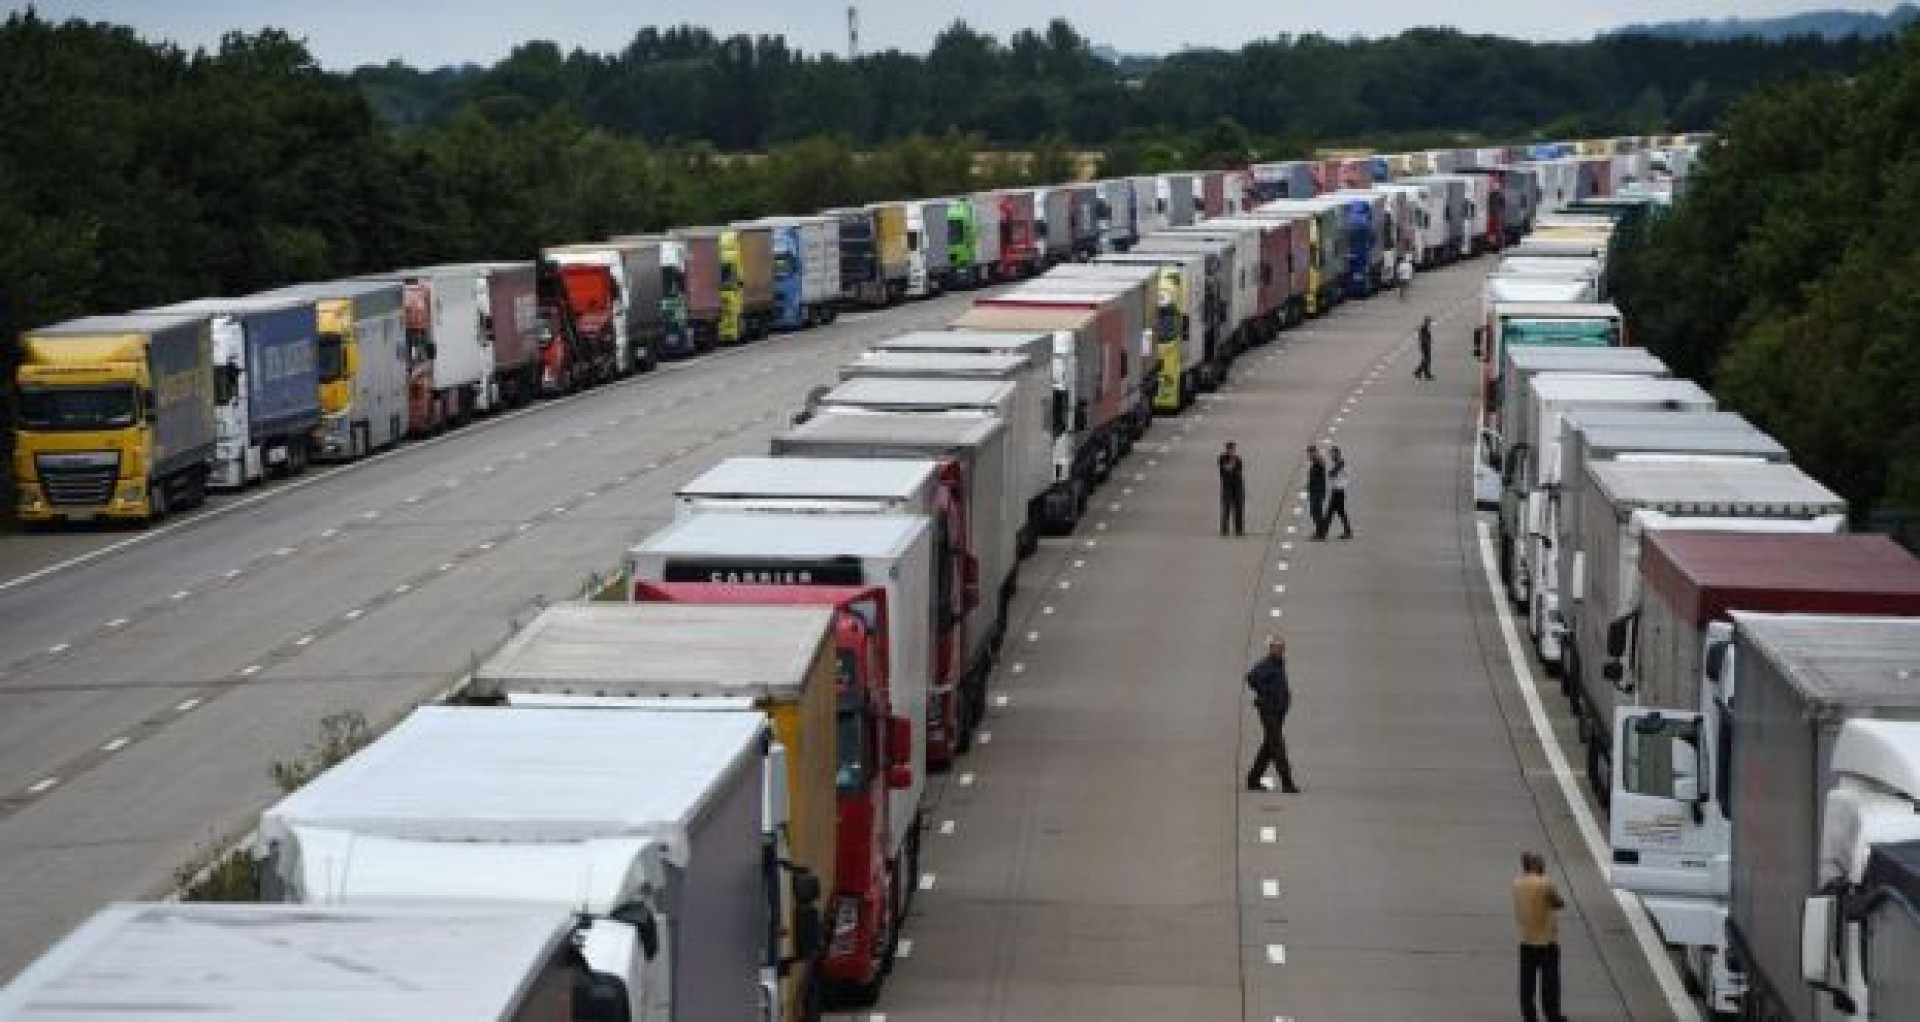 Șoferii de camion, nemulțumiți de extinderea de 860 milioane € a portului Calais: Întârzieri de 5 ore